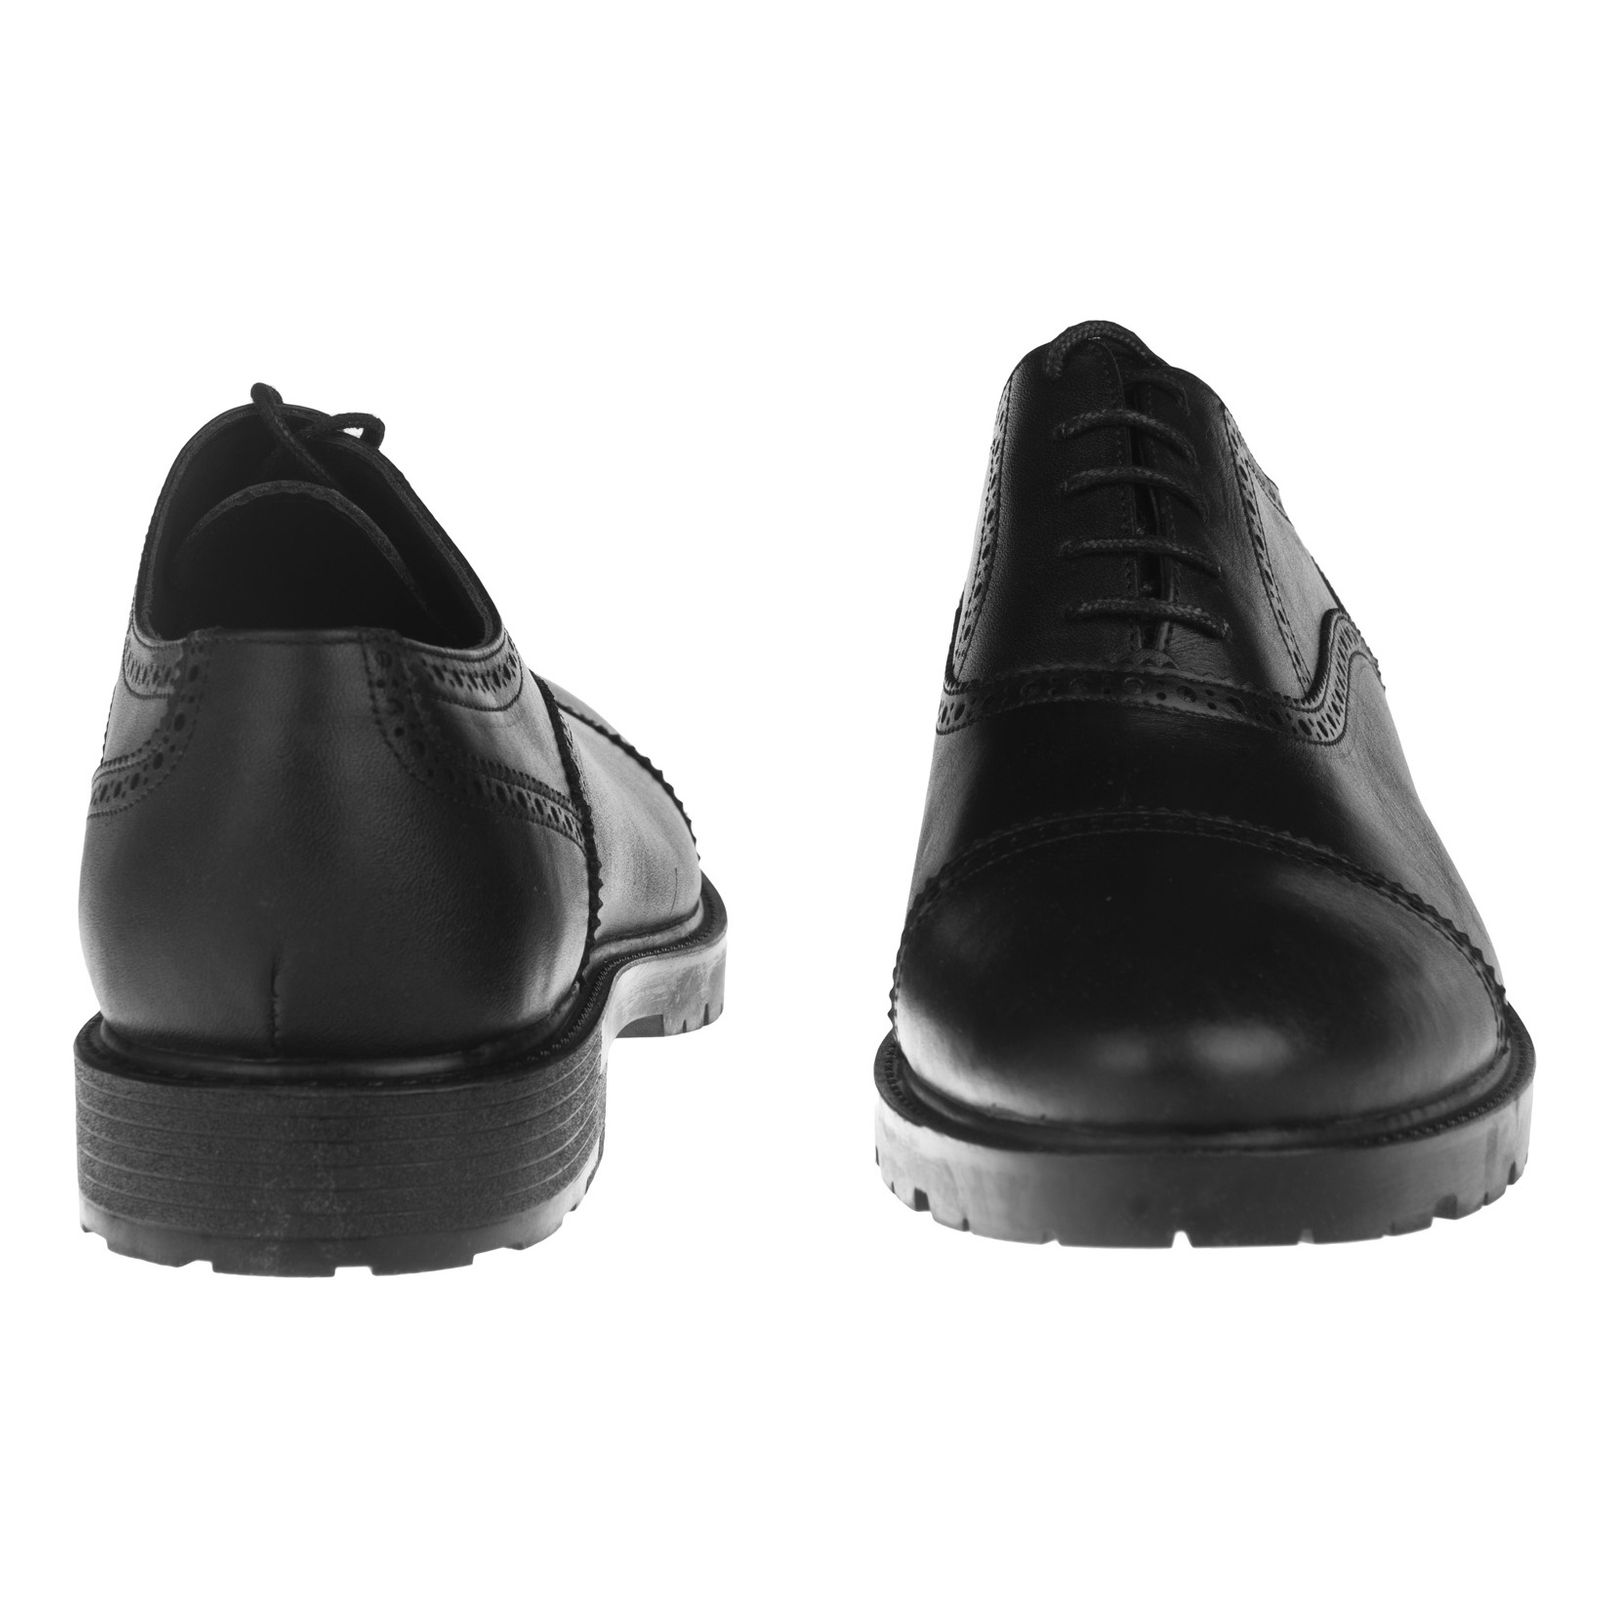 کفش مردانه بلوط مدل 7174B503-101 - مشکی - 6